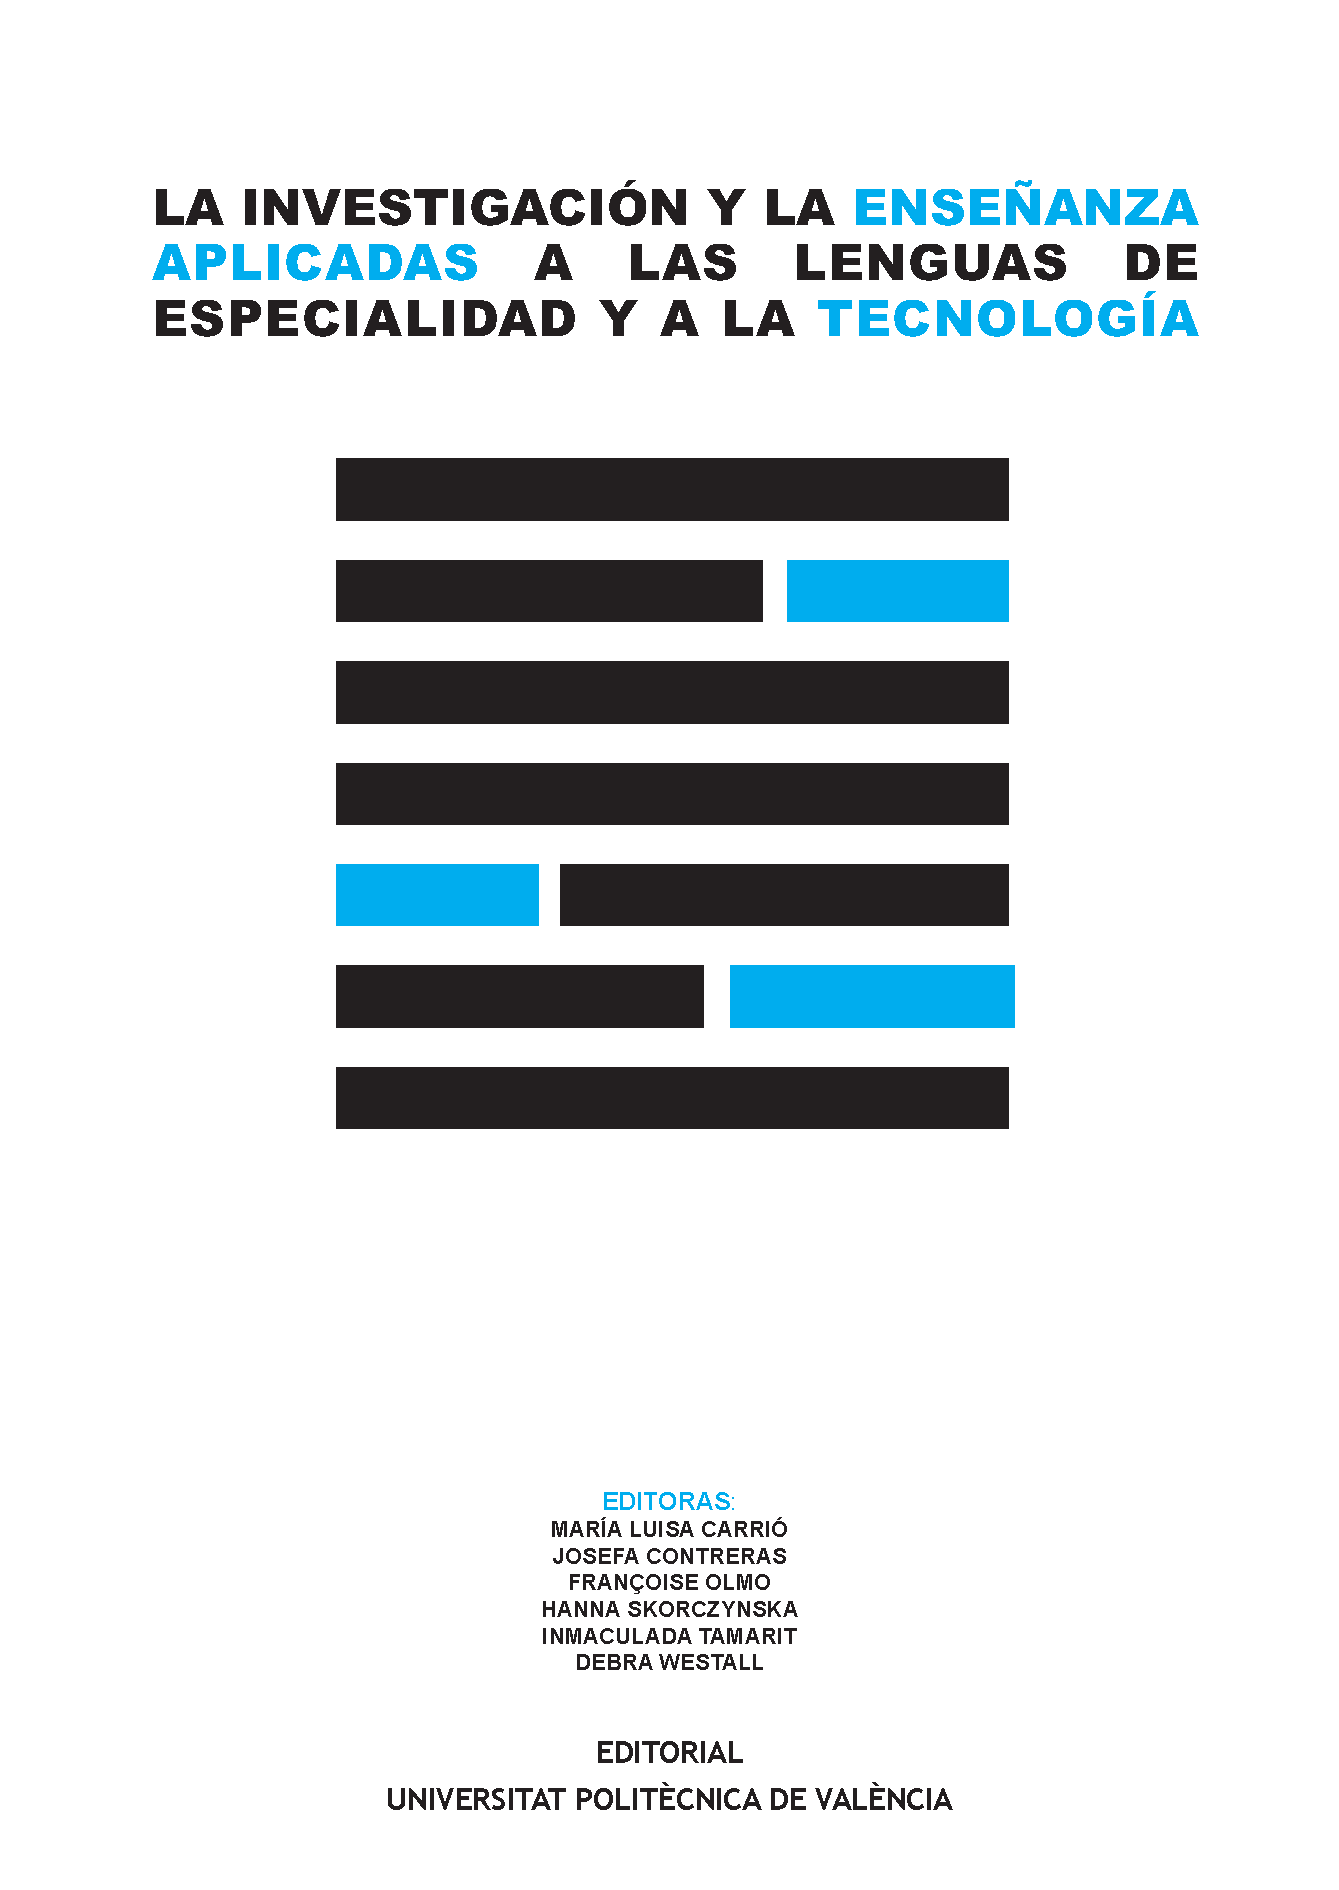 Imagen de portada del libro La investigación y al enseñanza aplicadas a las lenguas de especialidad y a la tecnología